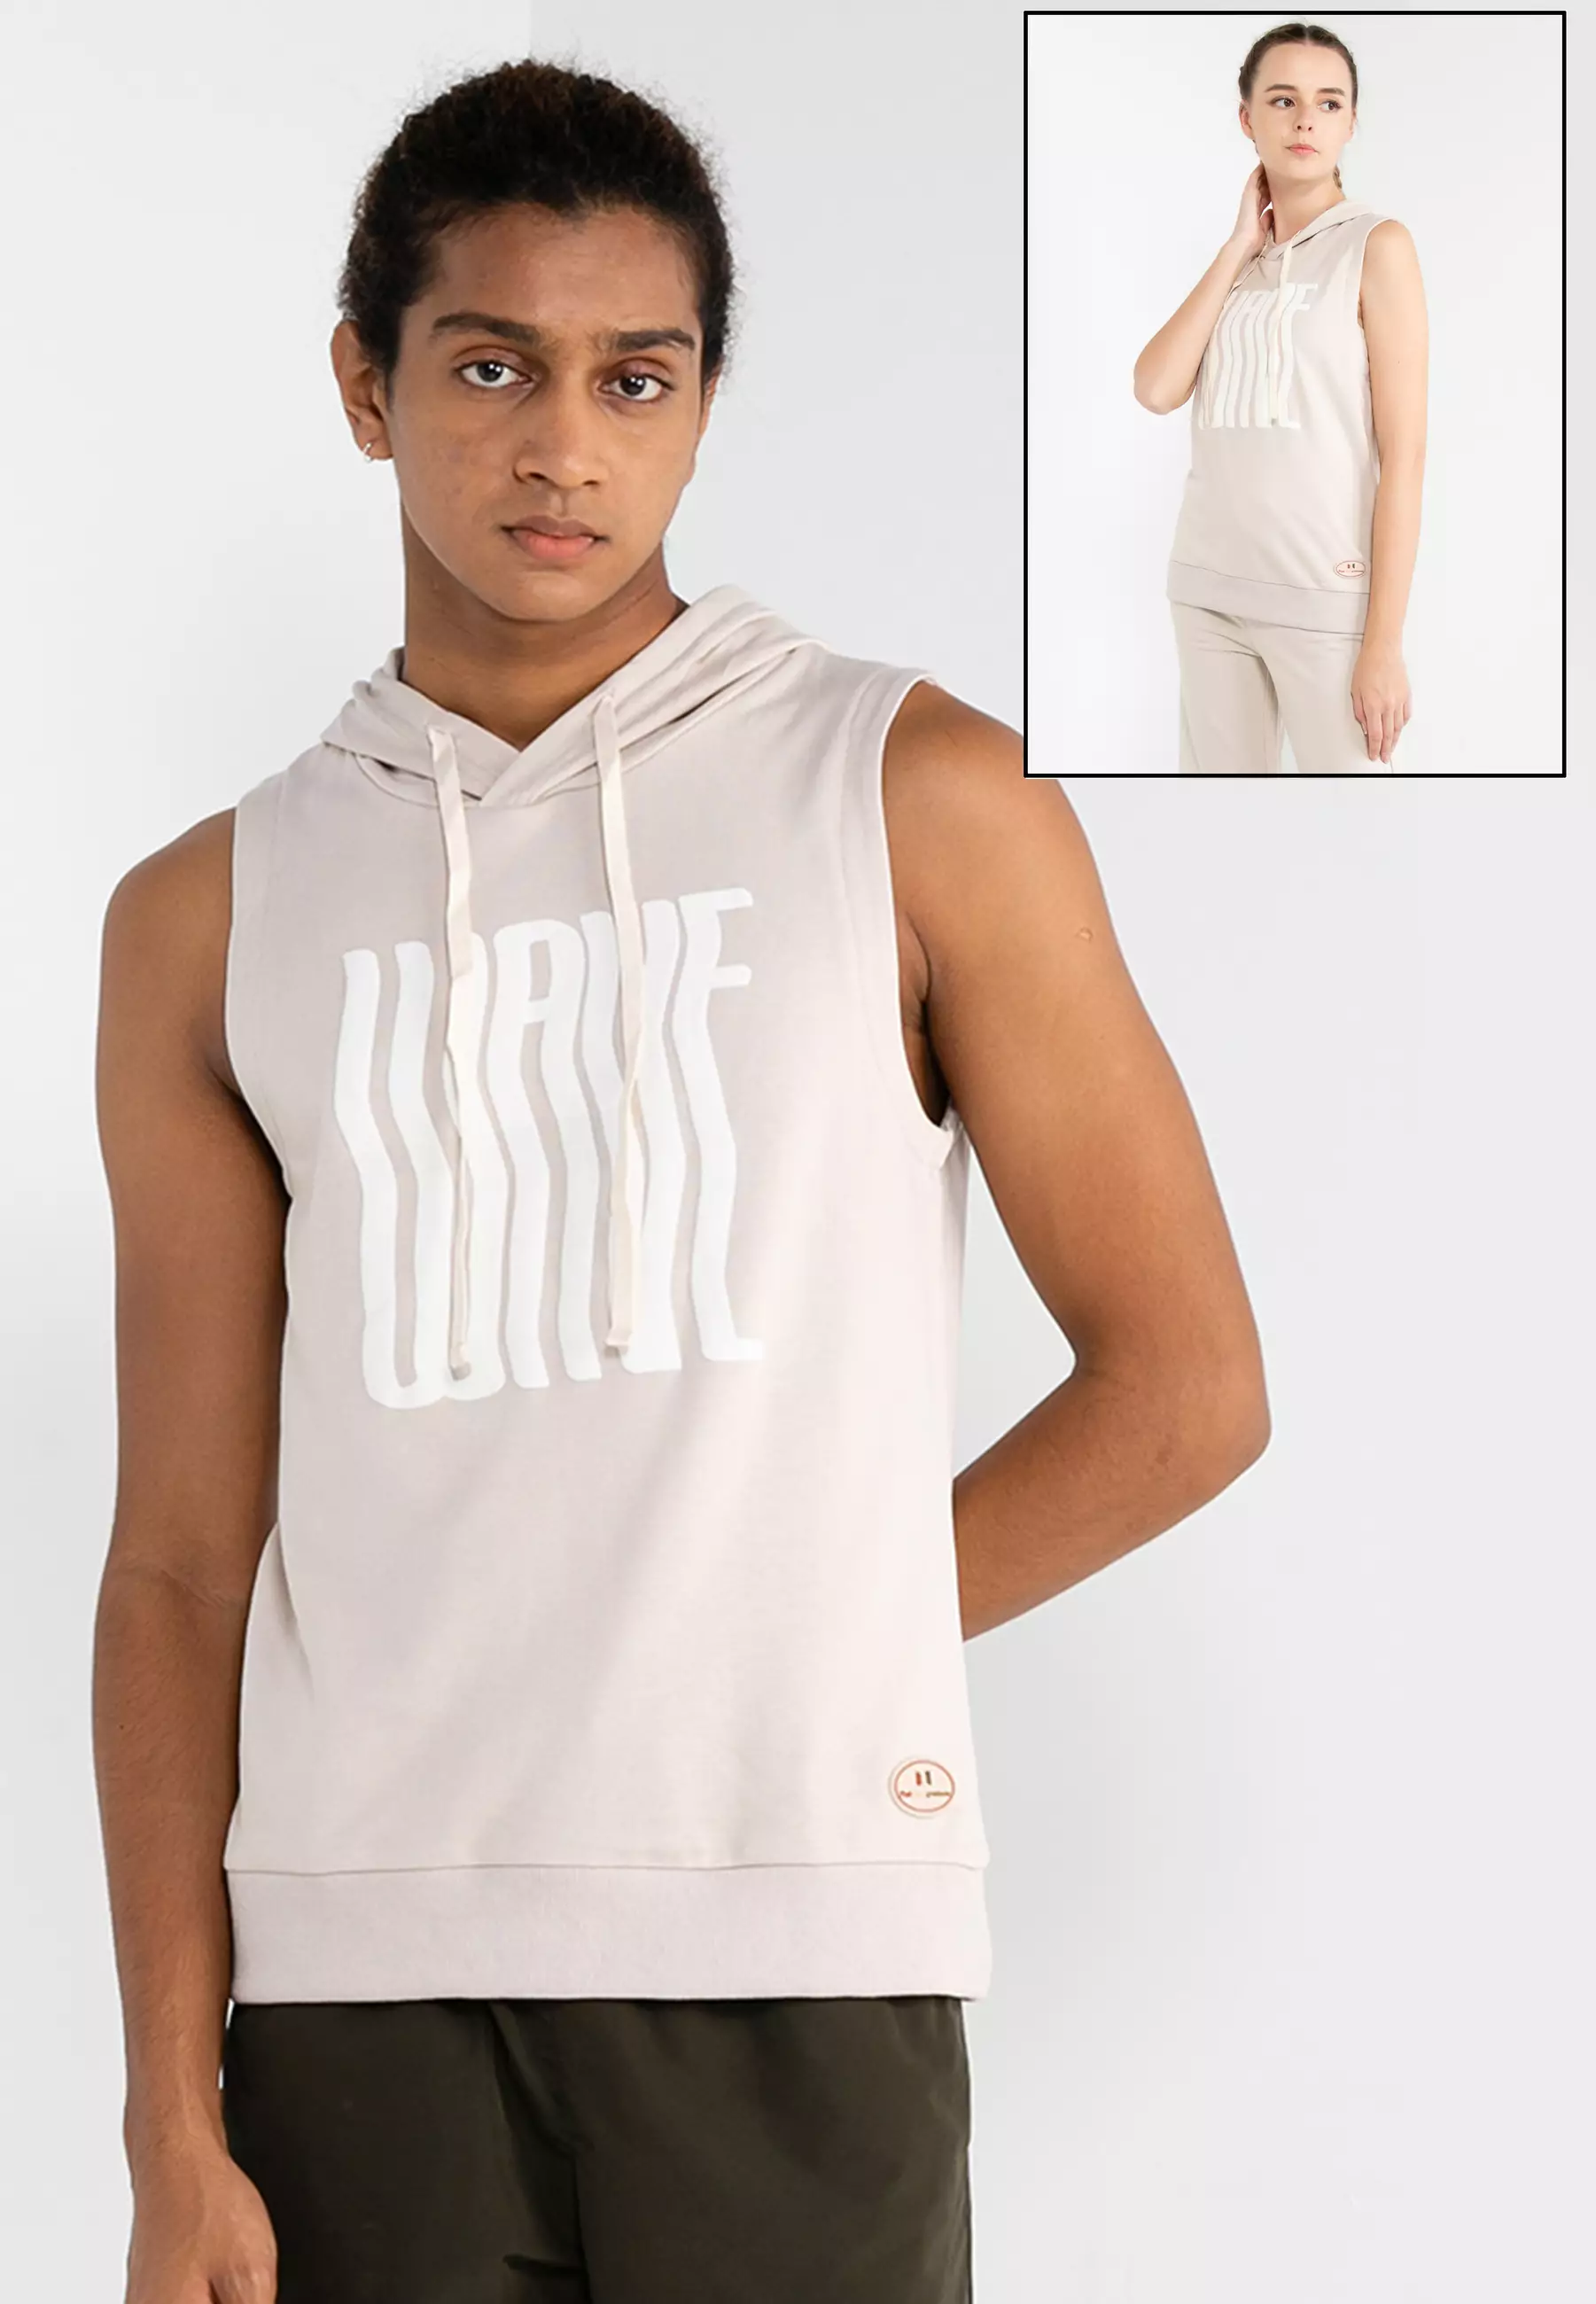 Nike Sleeveless Hoodies for Men for Sale